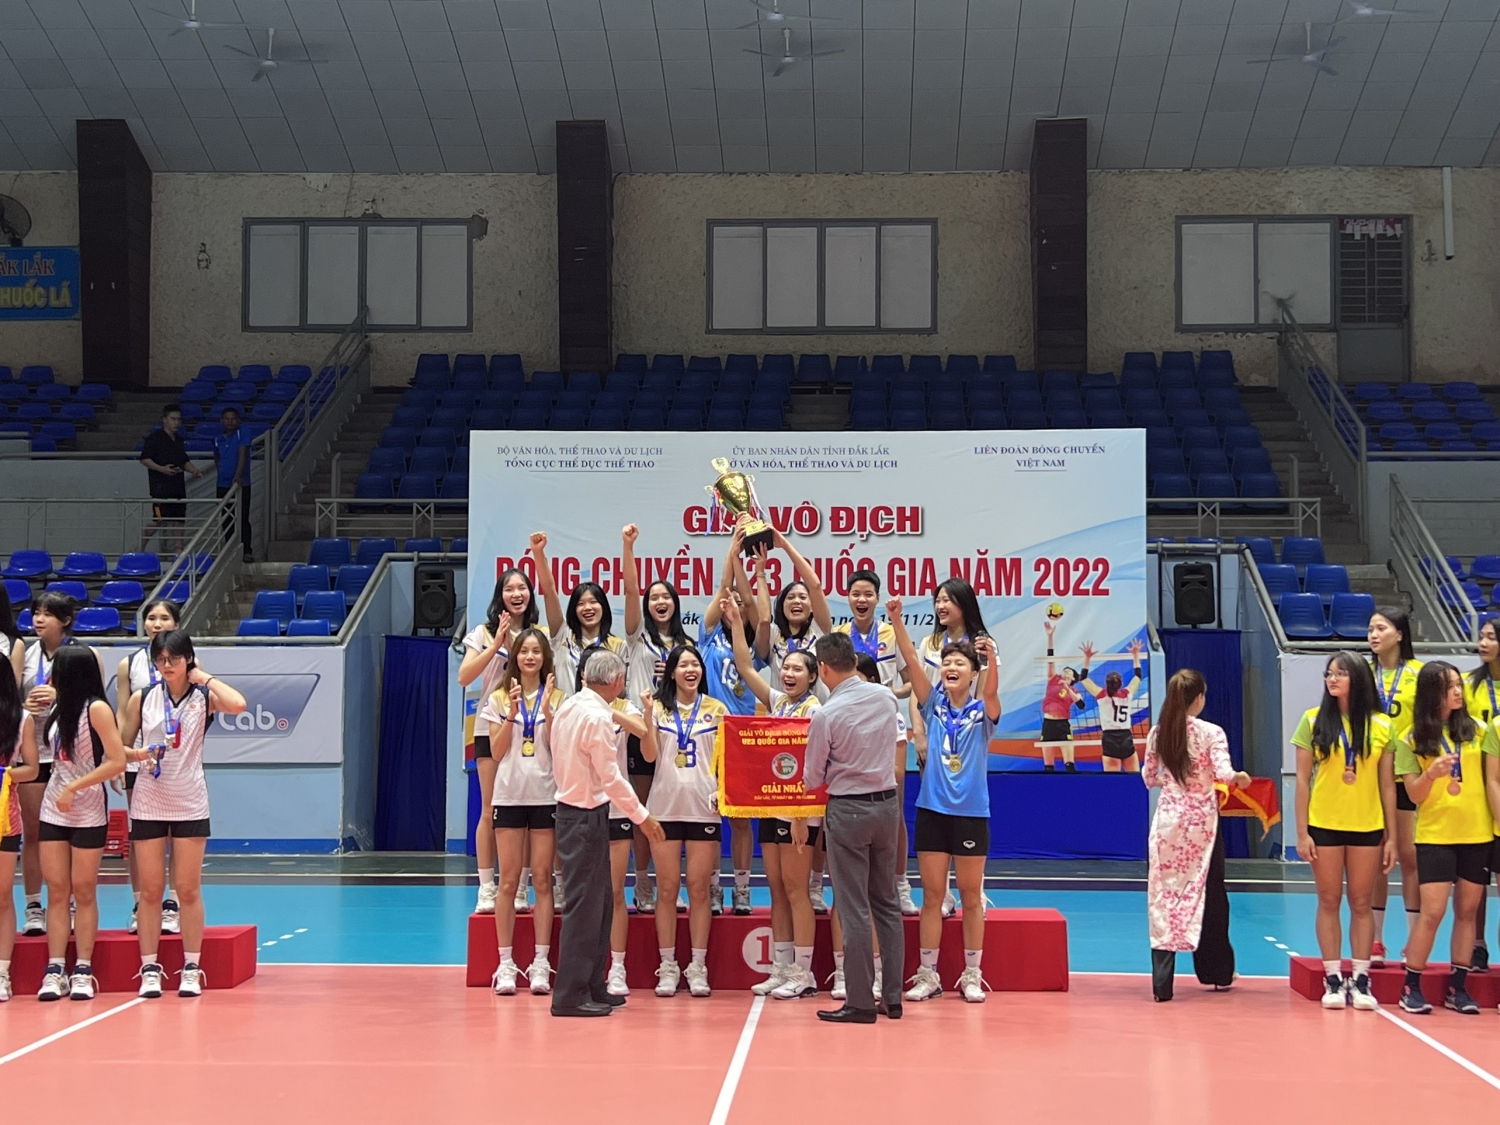 Đội bóng chuyền nữ VietinBank xuất sắc bảo vệ thành công ngôi vô địch giải vô địch bóng chuyền U23 Quốc gia